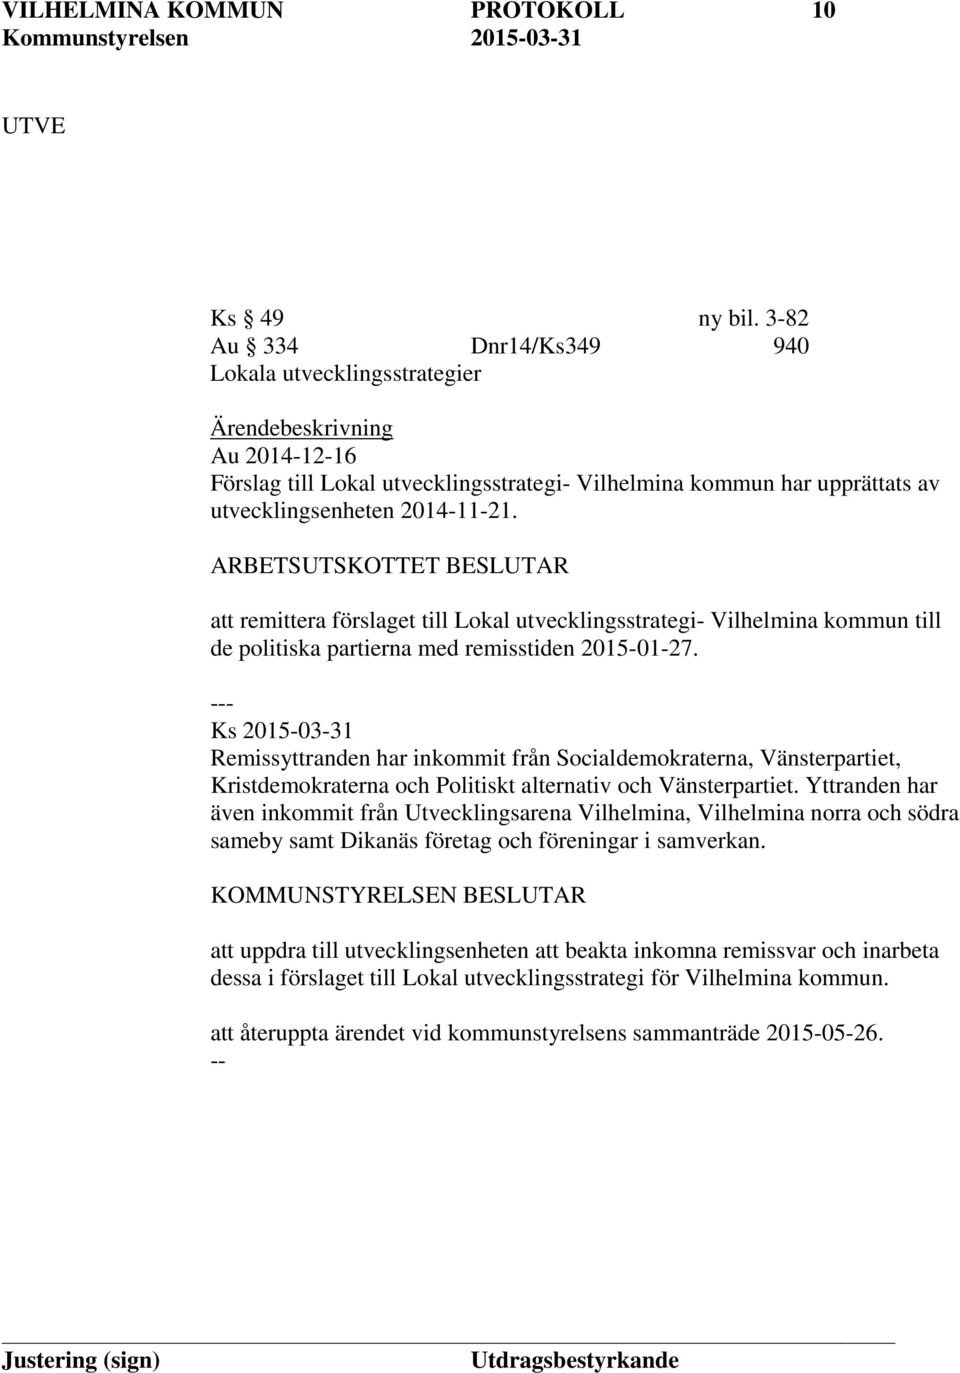 ARBETSUTSKOTTET BESLUTAR att remittera förslaget till Lokal utvecklingsstrategi- Vilhelmina kommun till de politiska partierna med remisstiden 2015-01-27.